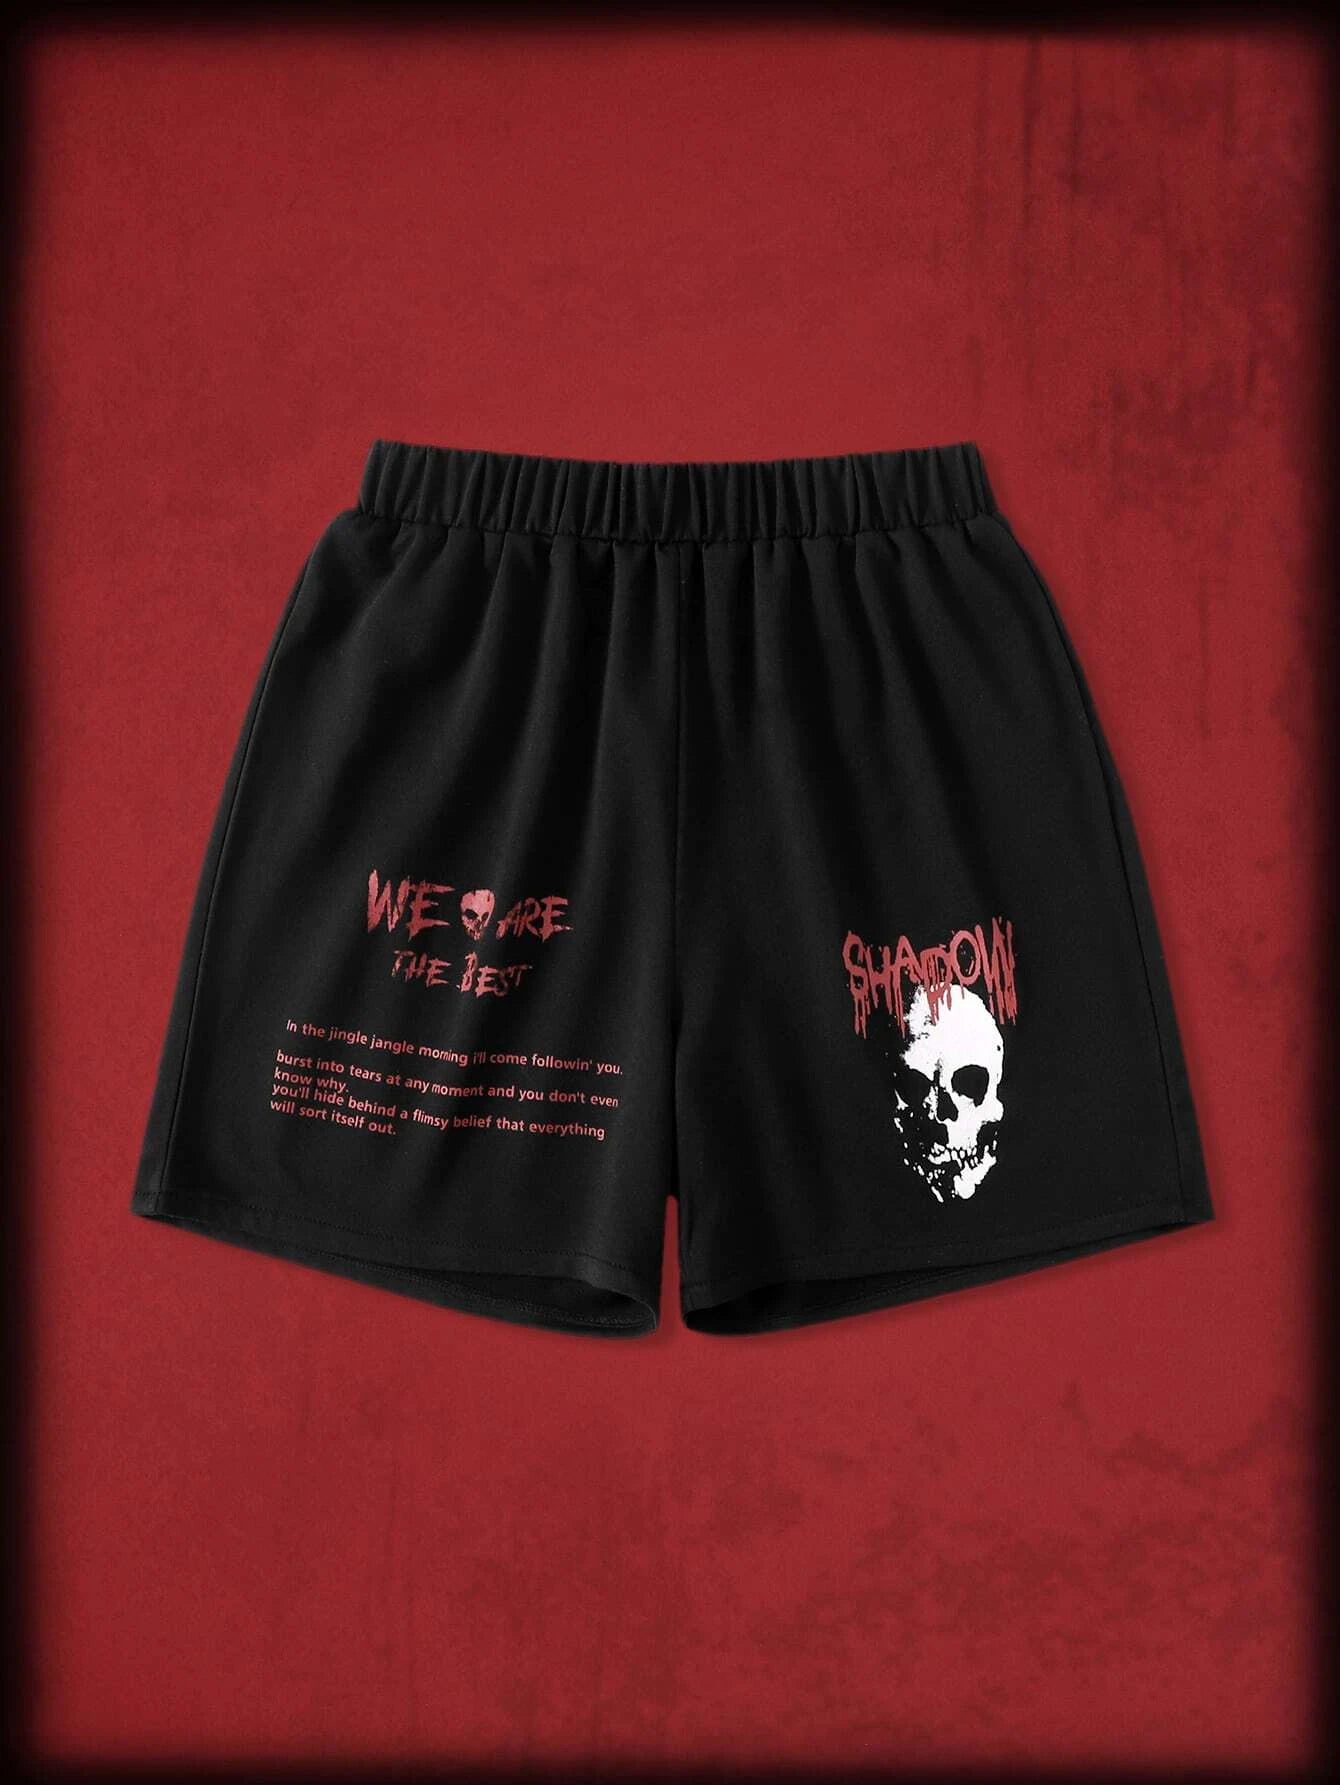 ROMWE Grunge Punk Skull Graphic Sweatpants